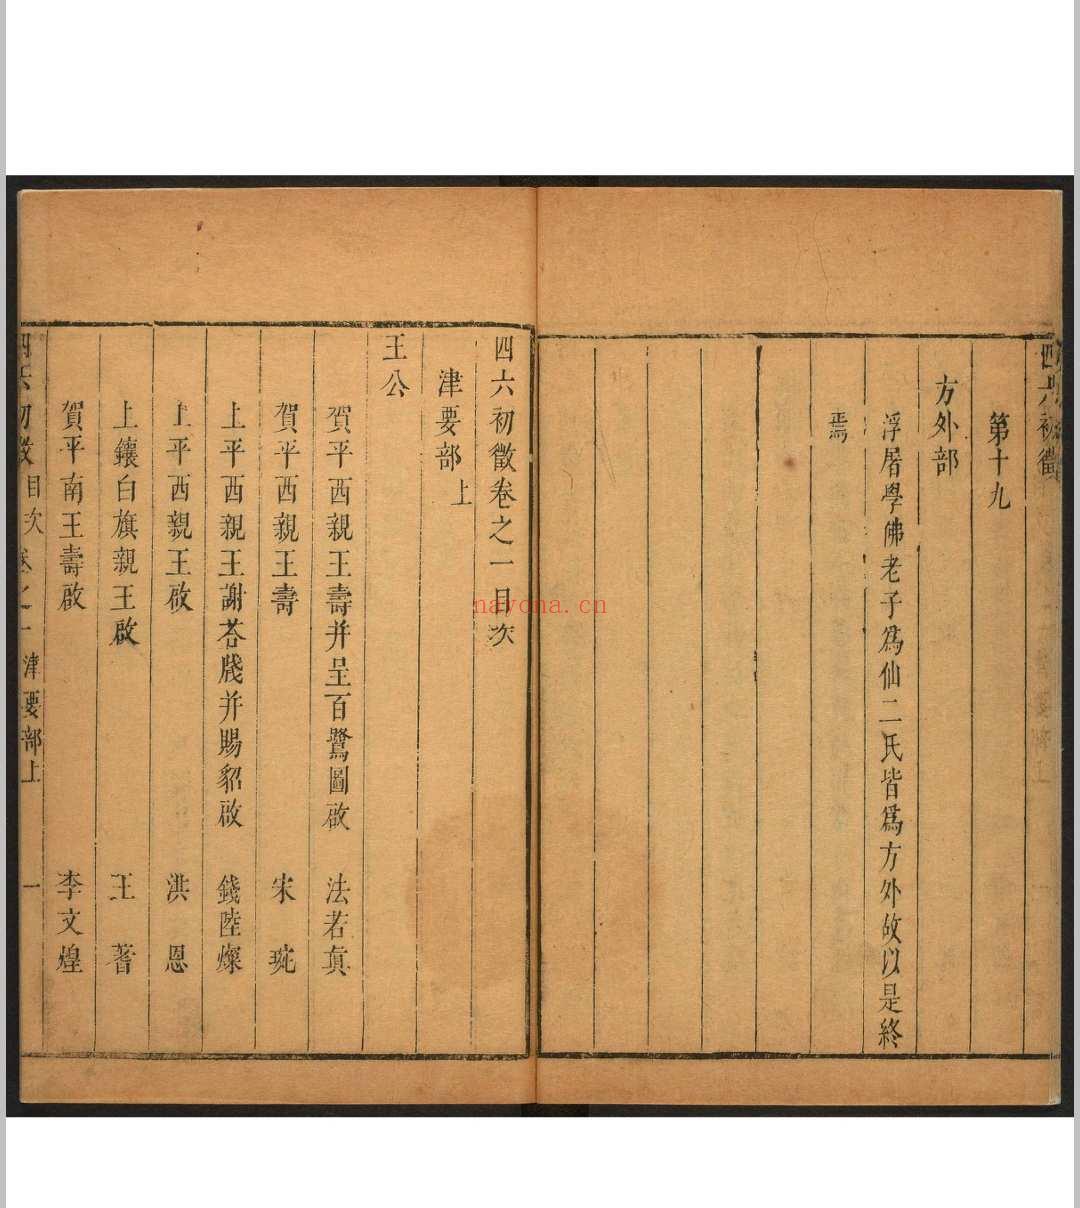 四六初徵 二十卷 李渔辑 沉心友校释.金陵  翼圣堂, [1671]